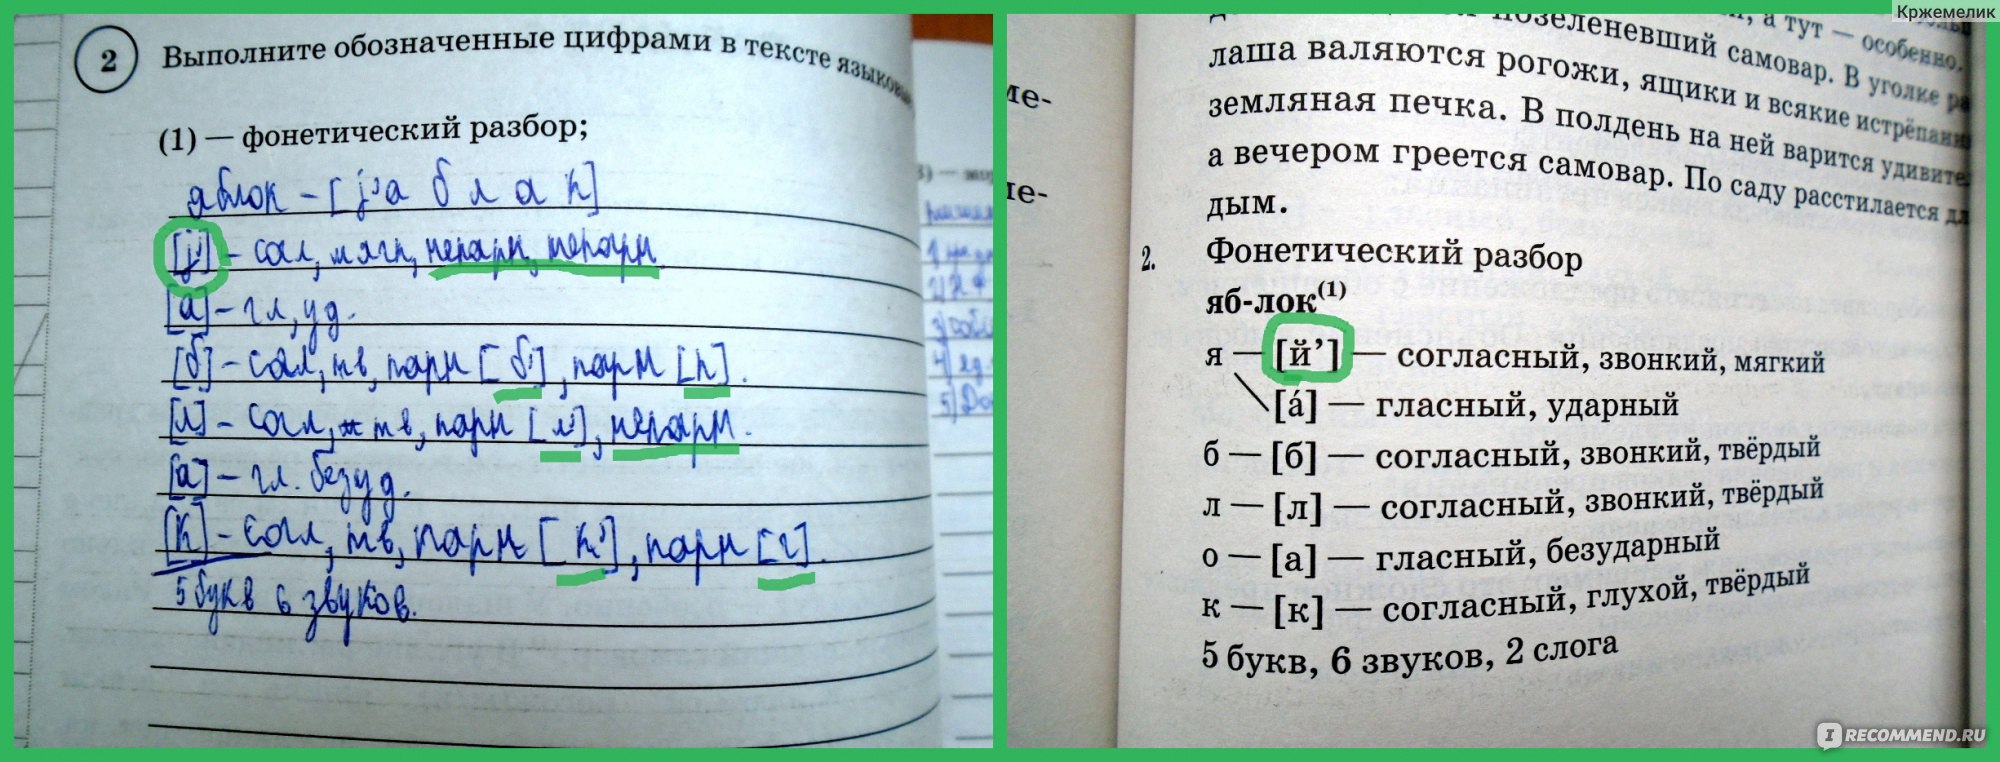 Народные старинные песни текст впр ответы. Фонетический разбор слова вниз 5 класс ВПР по русскому.